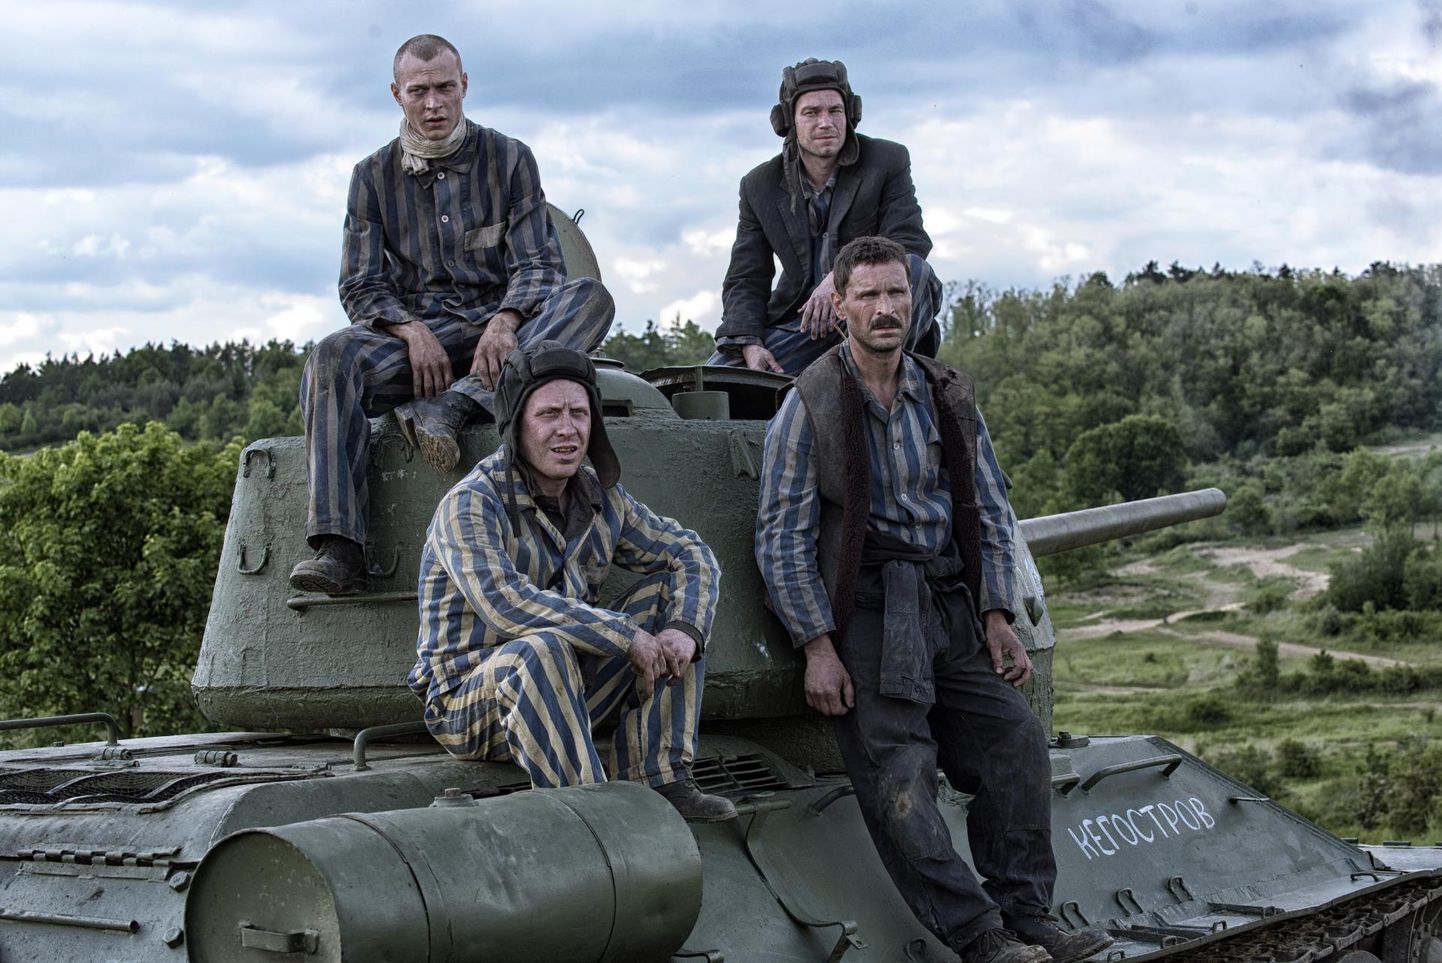 Vene sõjafilm «T-34» on erilise patriootliku agendata lihtsakoeline meelelahutus. 